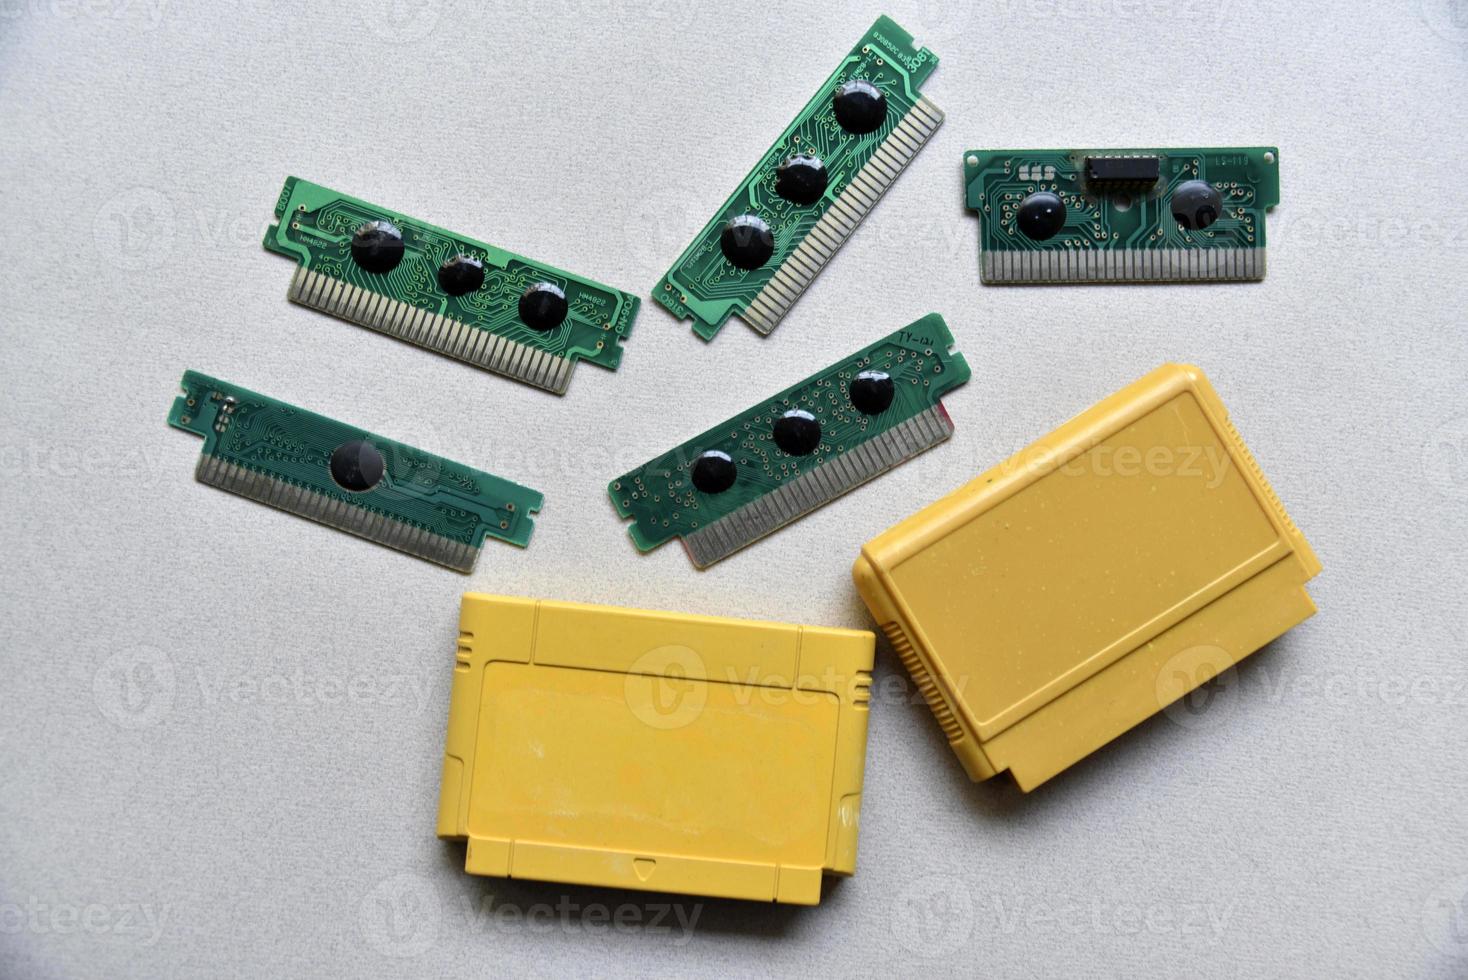 elektronisk patron styrelse för retro spel trösta. en gul plast patron på en svart bakgrund och ett elektronisk styrelse. foto